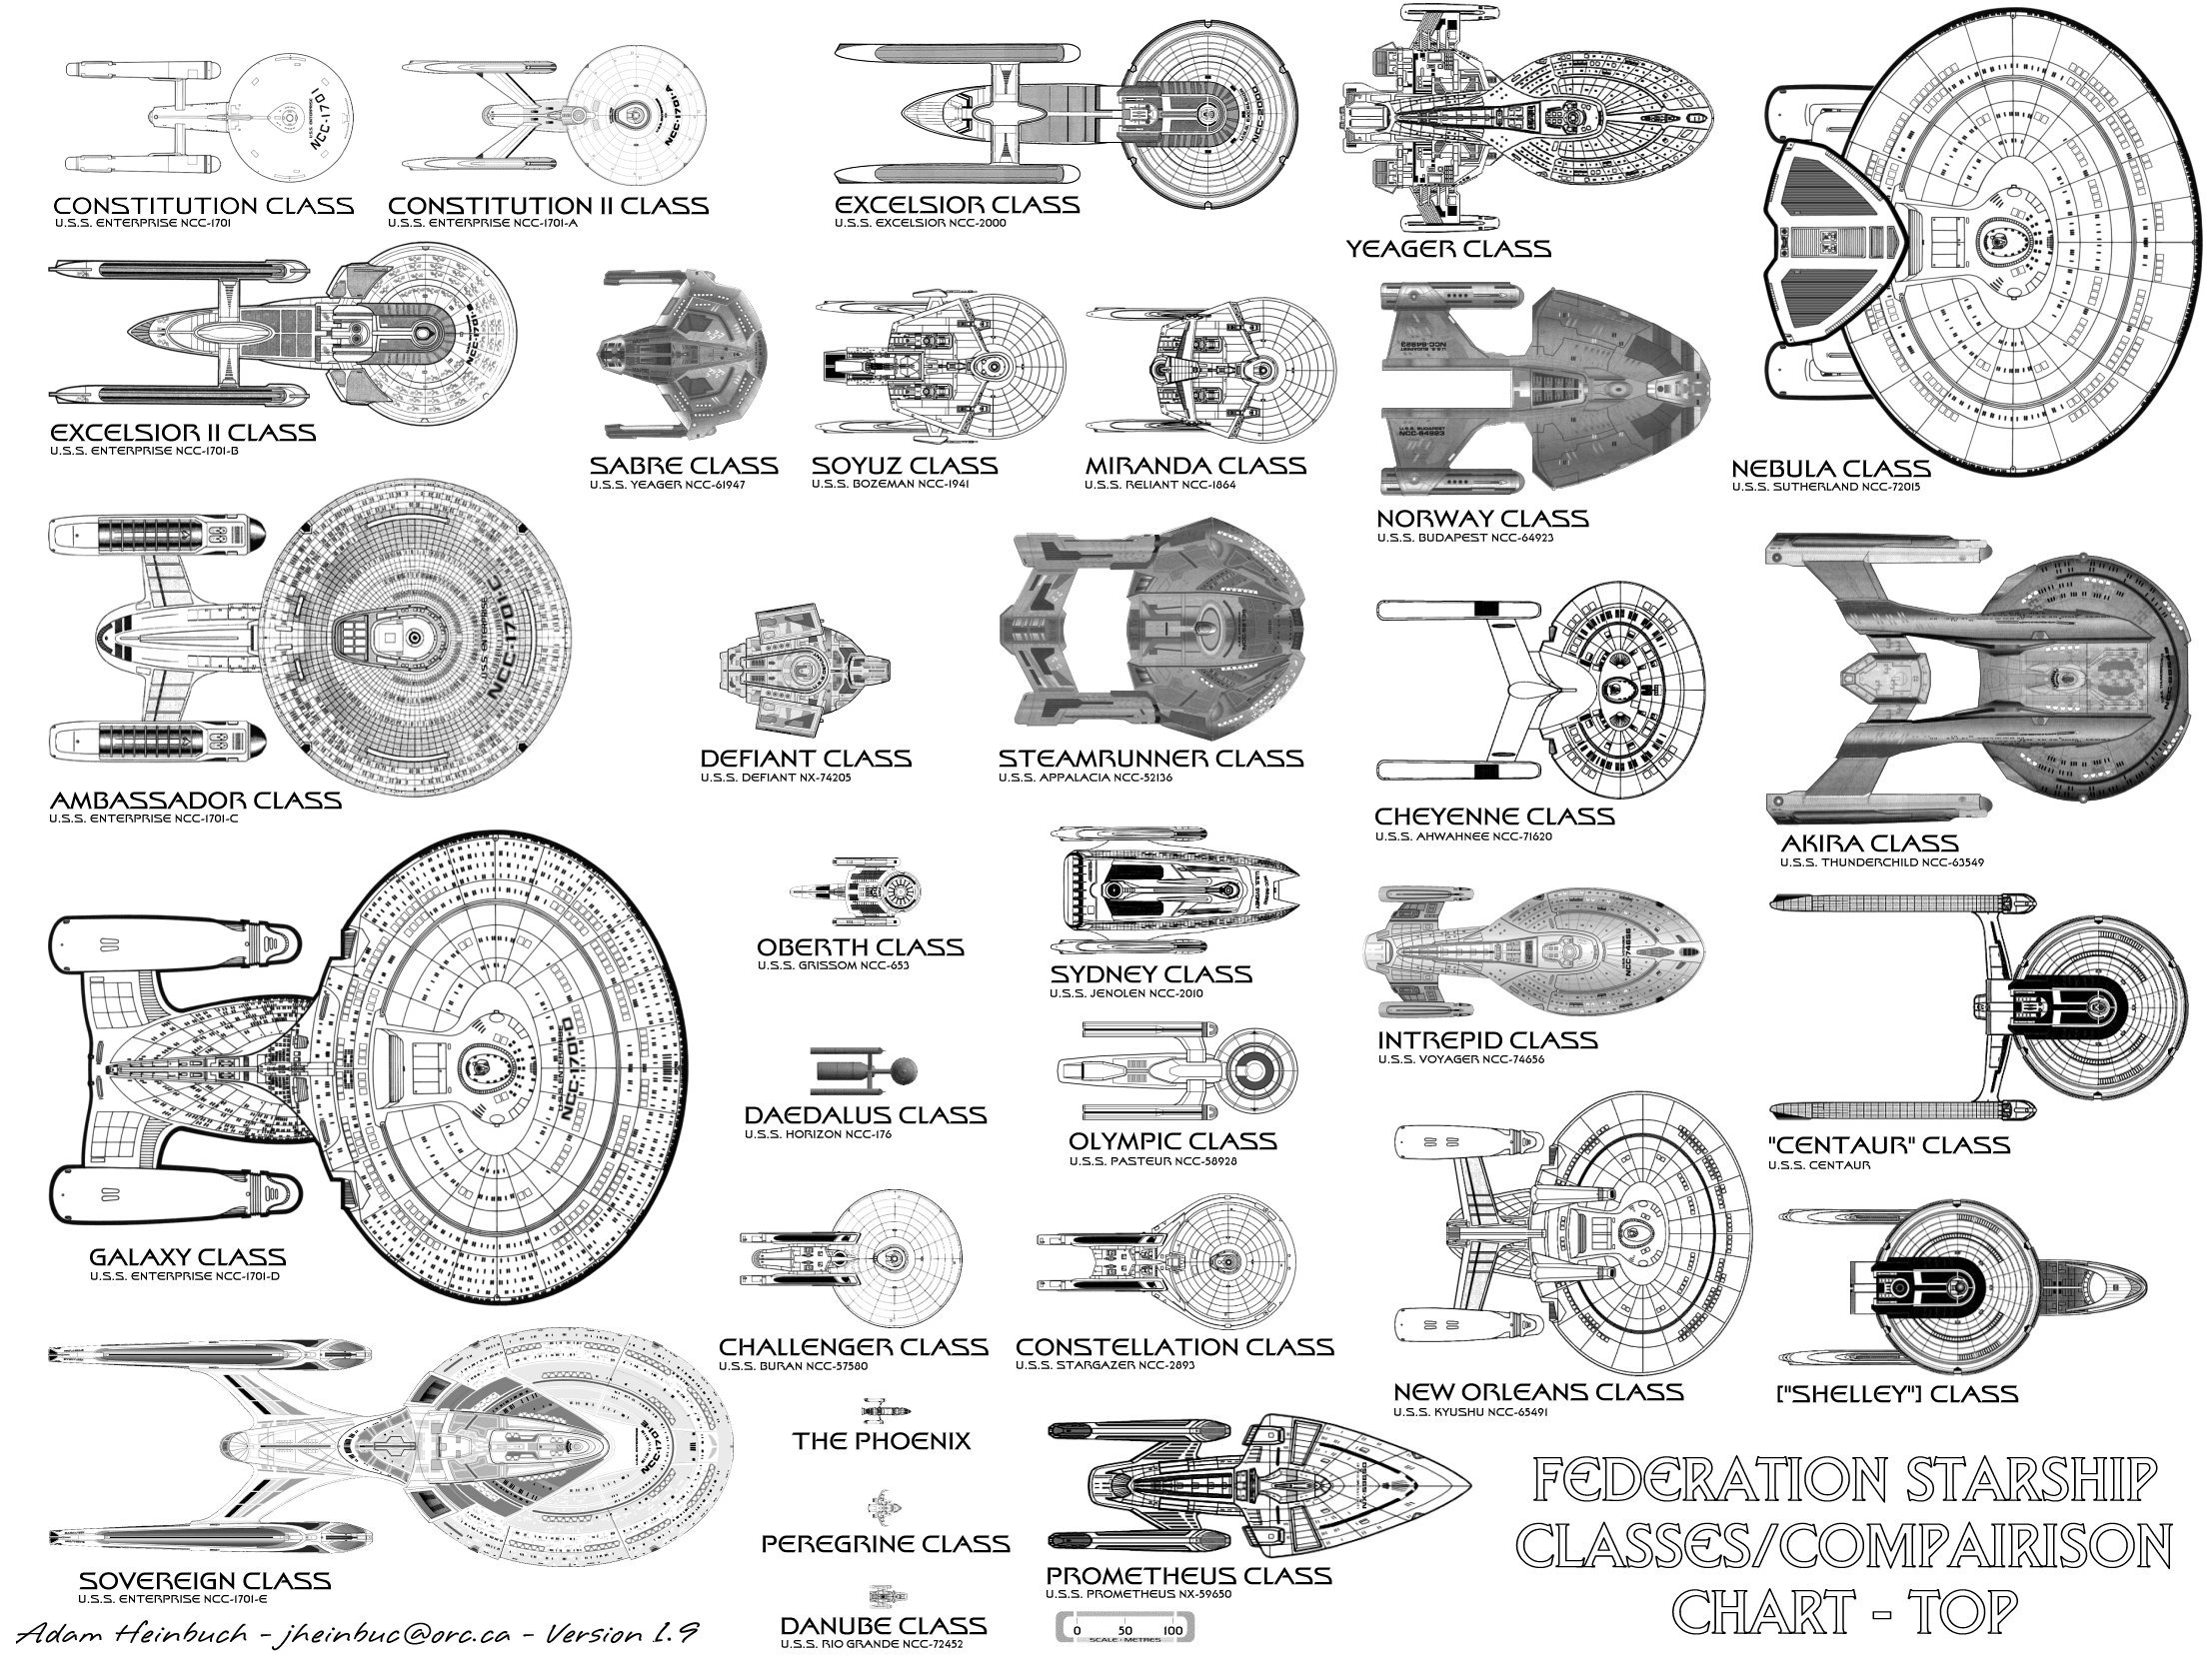 star trek federation hierarchy